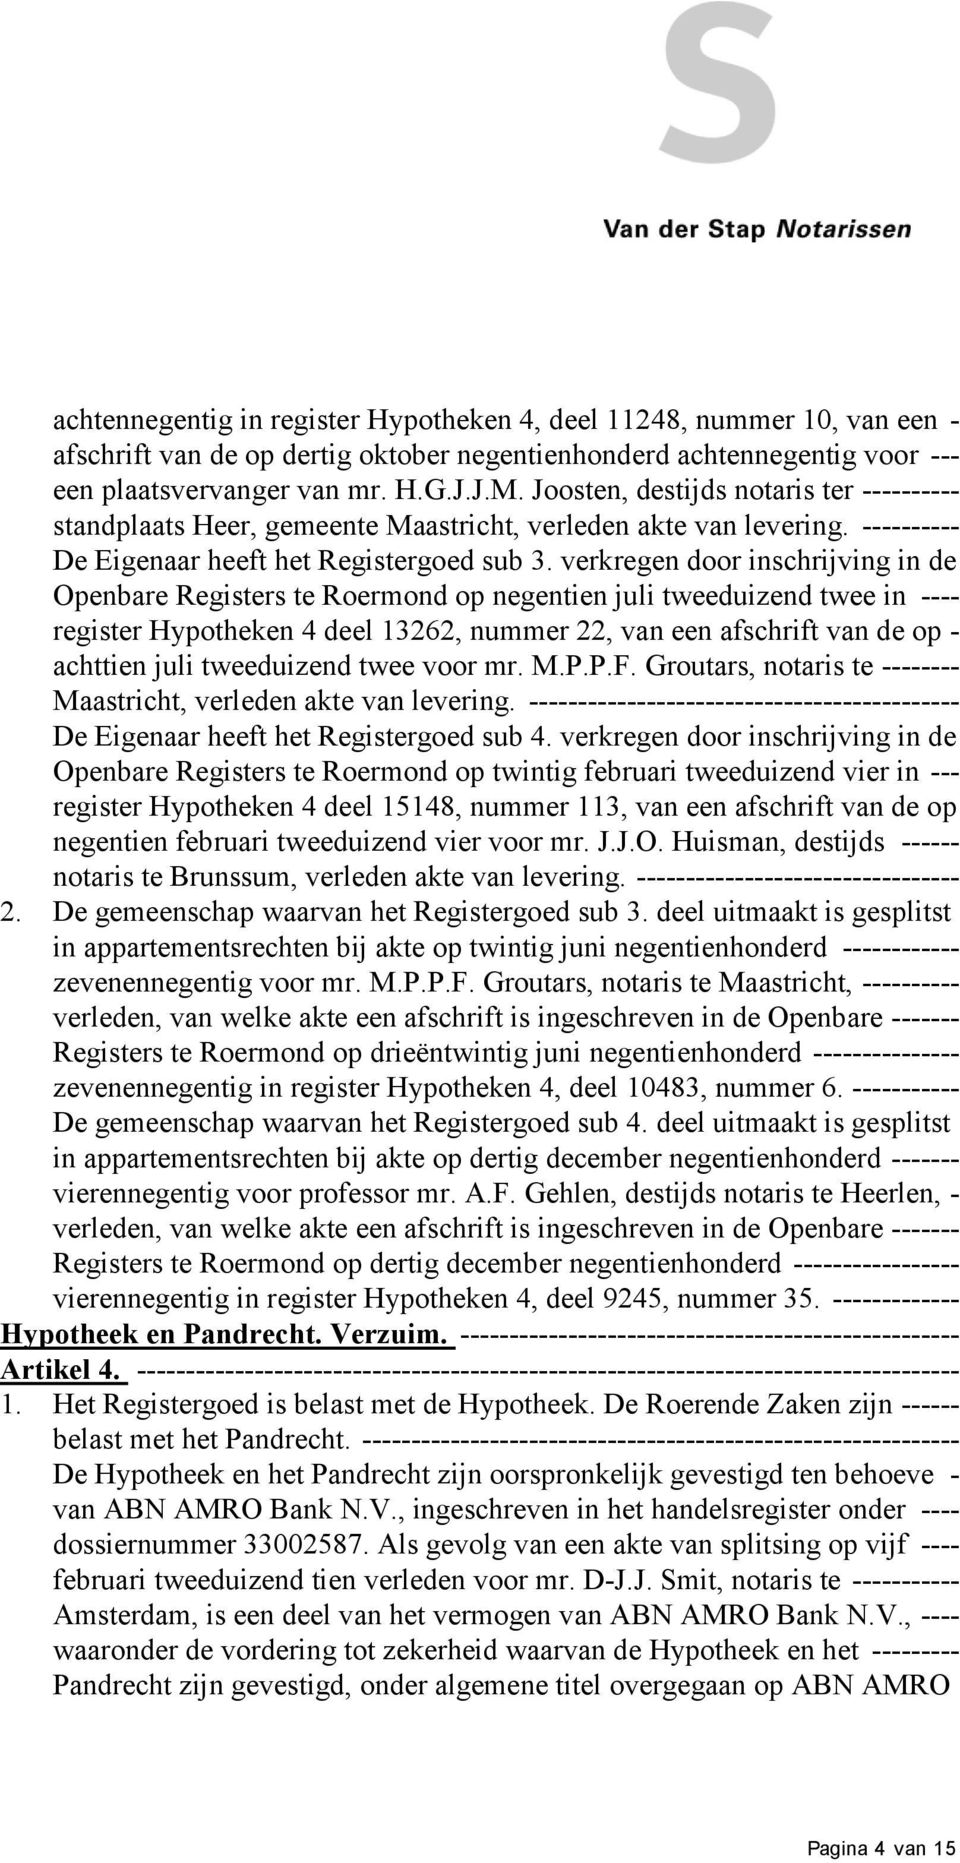 verkregen door inschrijving in de Openbare Registers te Roermond op negentien juli tweeduizend twee in ---- register Hypotheken 4 deel 13262, nummer 22, van een afschrift van de op - achttien juli